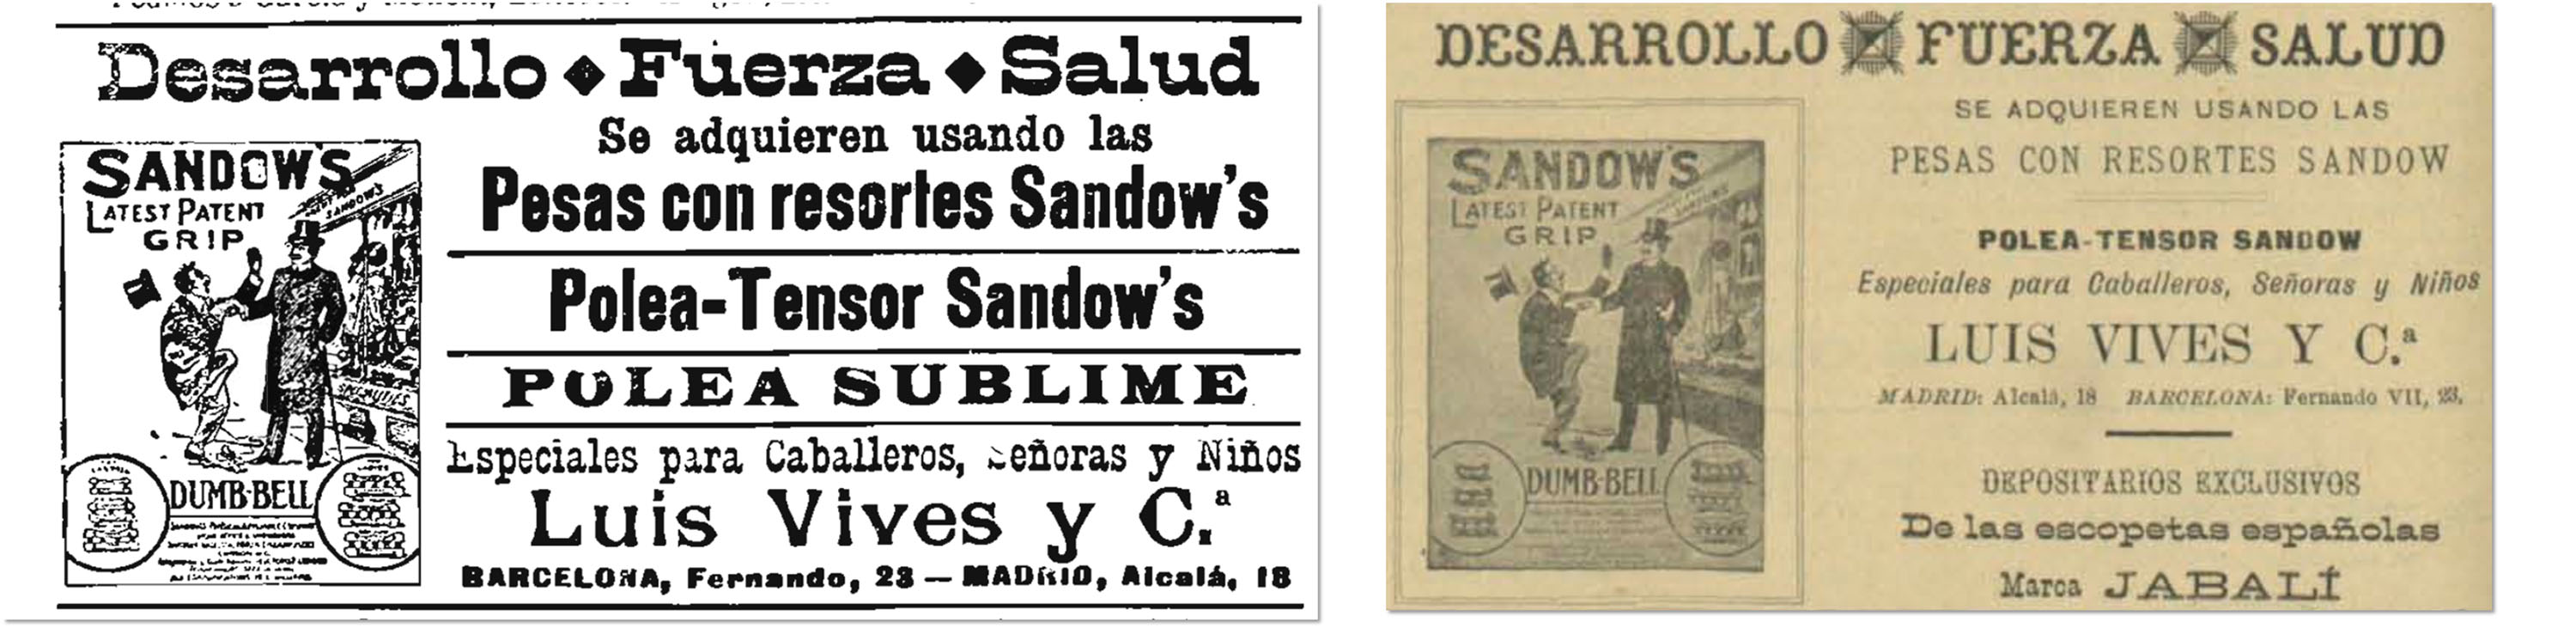 La Publicidad (Edición de la noche), Barcelona, 27 de diciembre de 1900, p. 1; Gente Vieja, Madrid 10 de mayo de 1901, p. 12